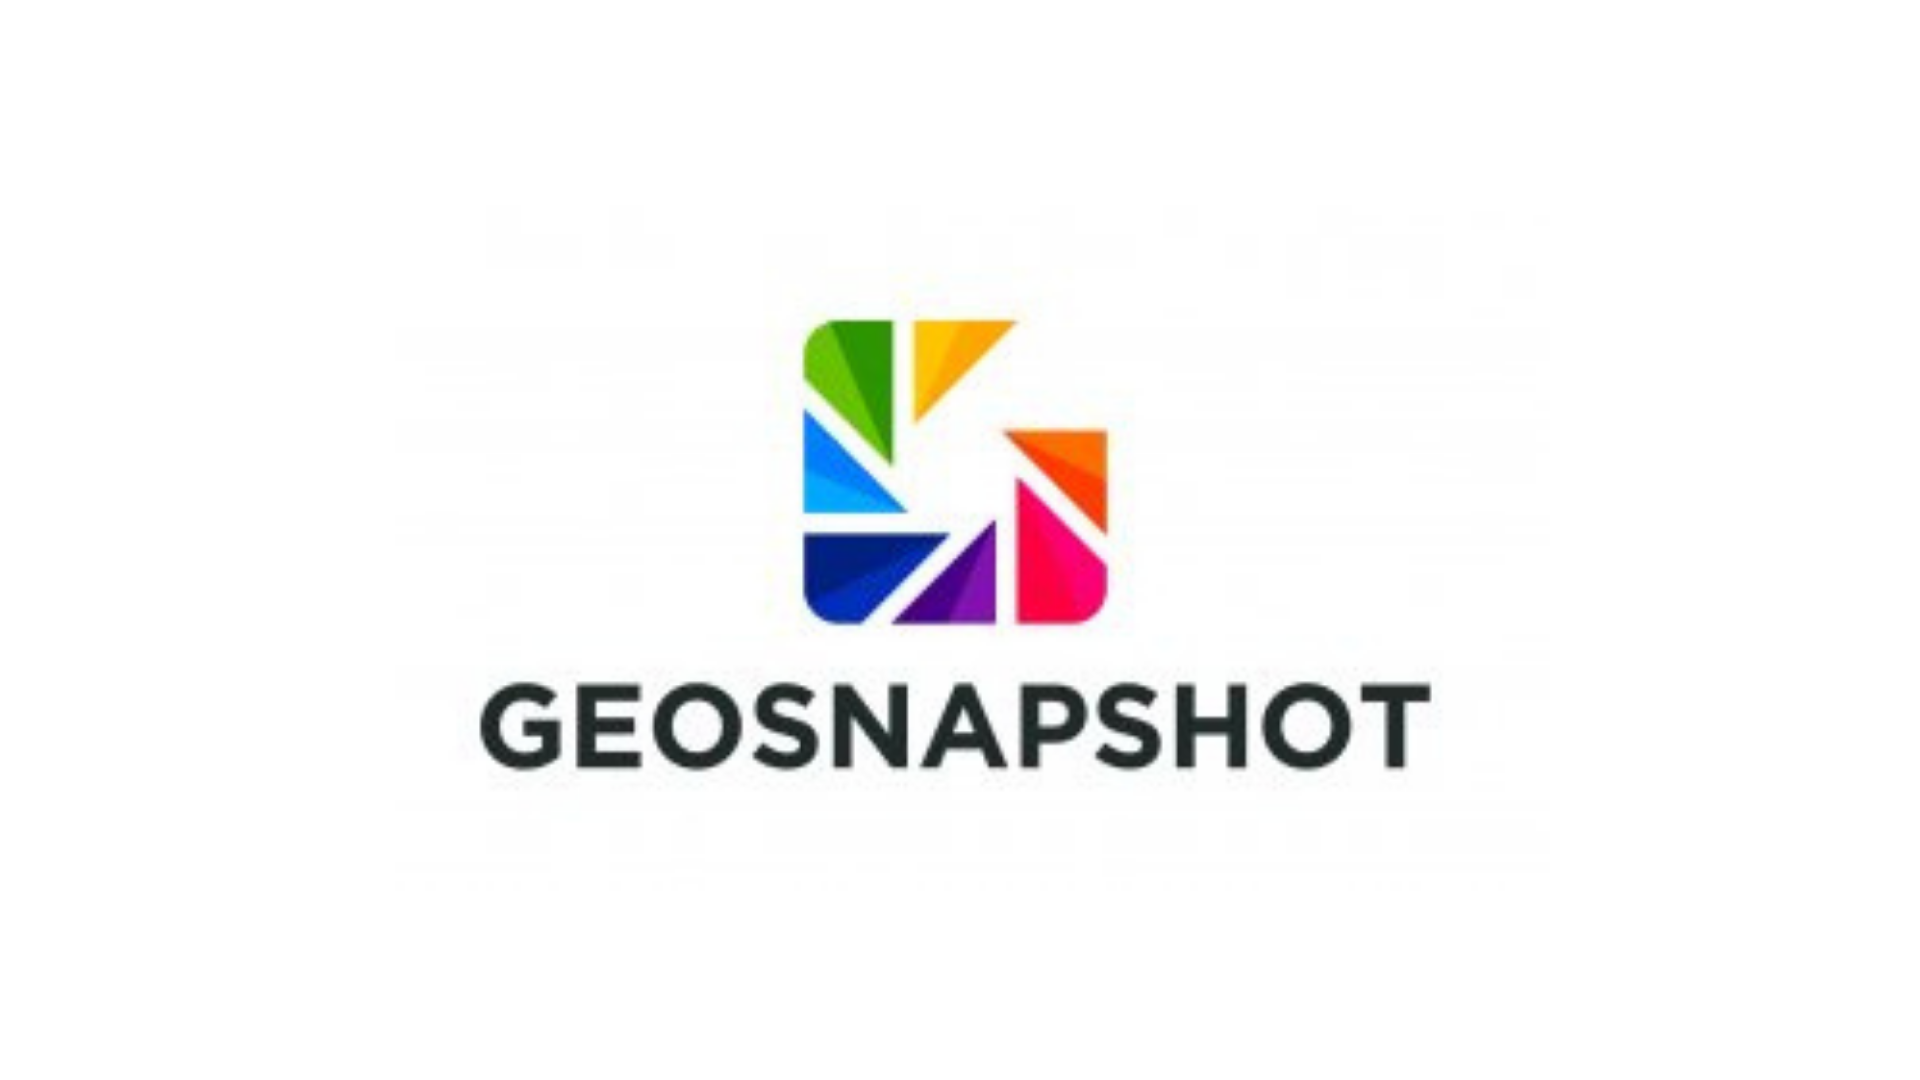 Geosnapshot